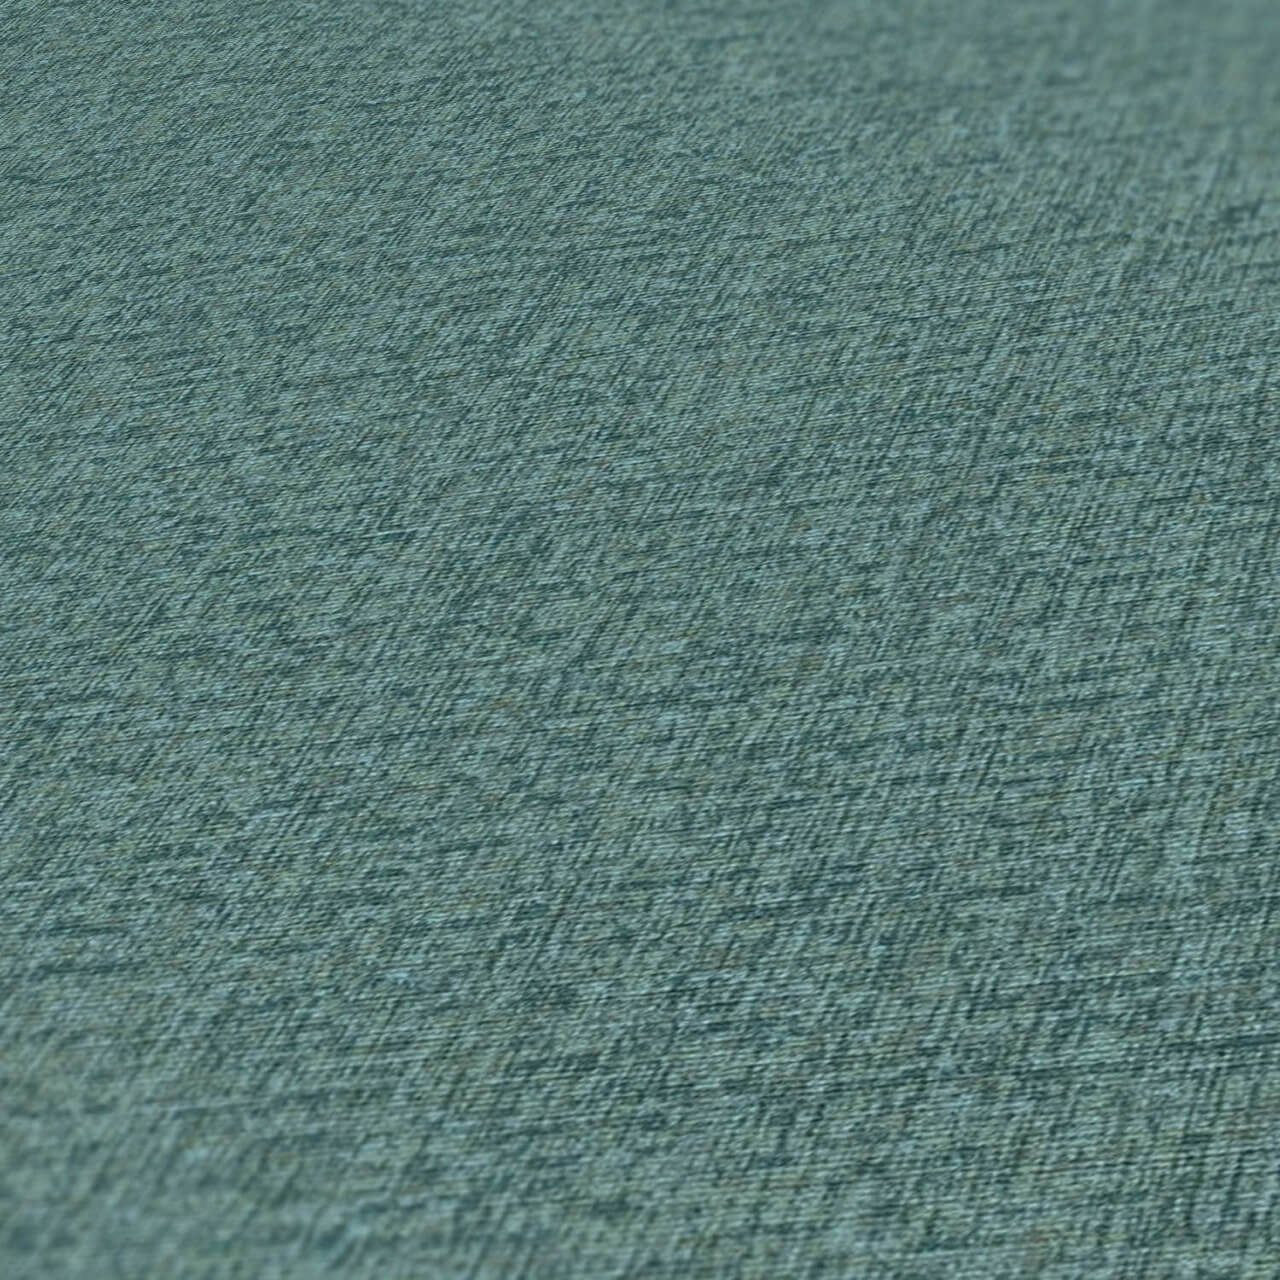 KUNSTLOFT Vliestapete Scenic m, matt, Design lichtbeständige 0.53x10.05 grün, blau Tapete Splendor